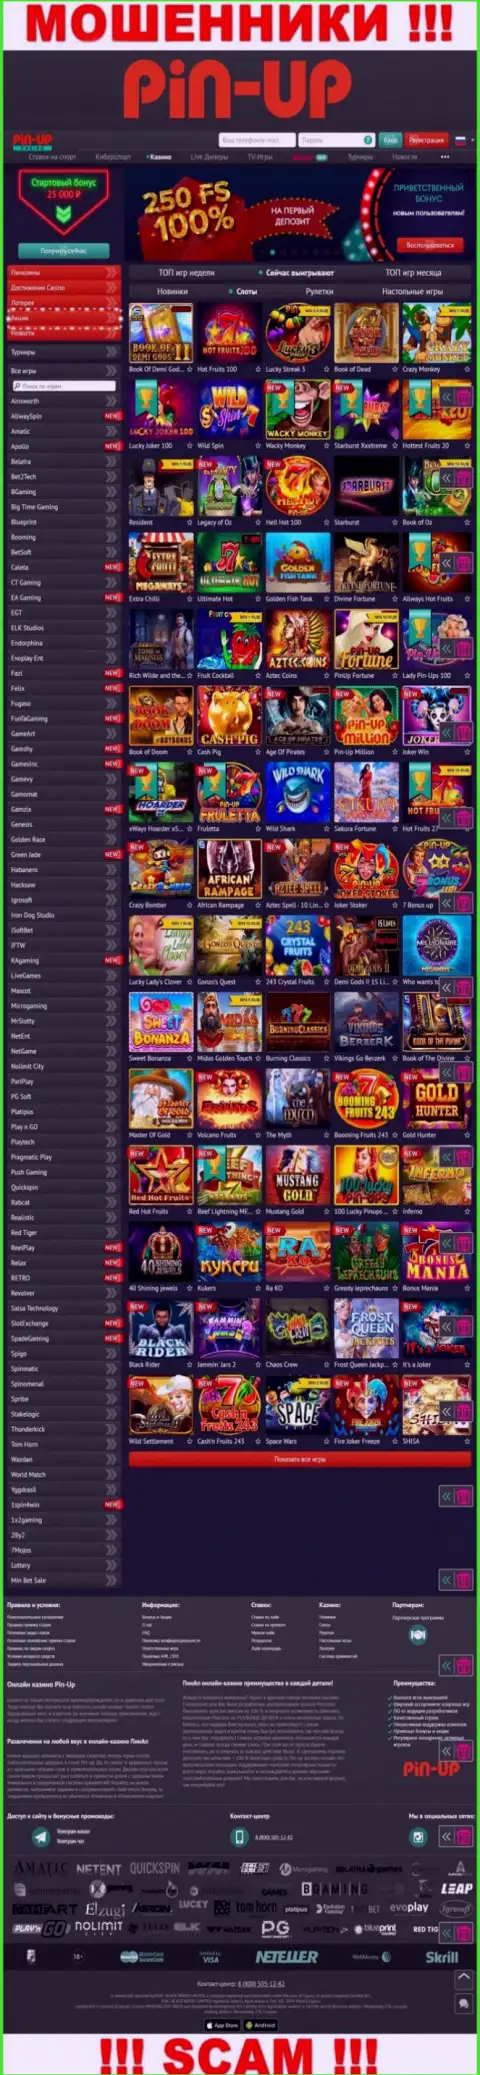 Pin-Up Casino это официальный ресурс internet кидал PinUp Casino